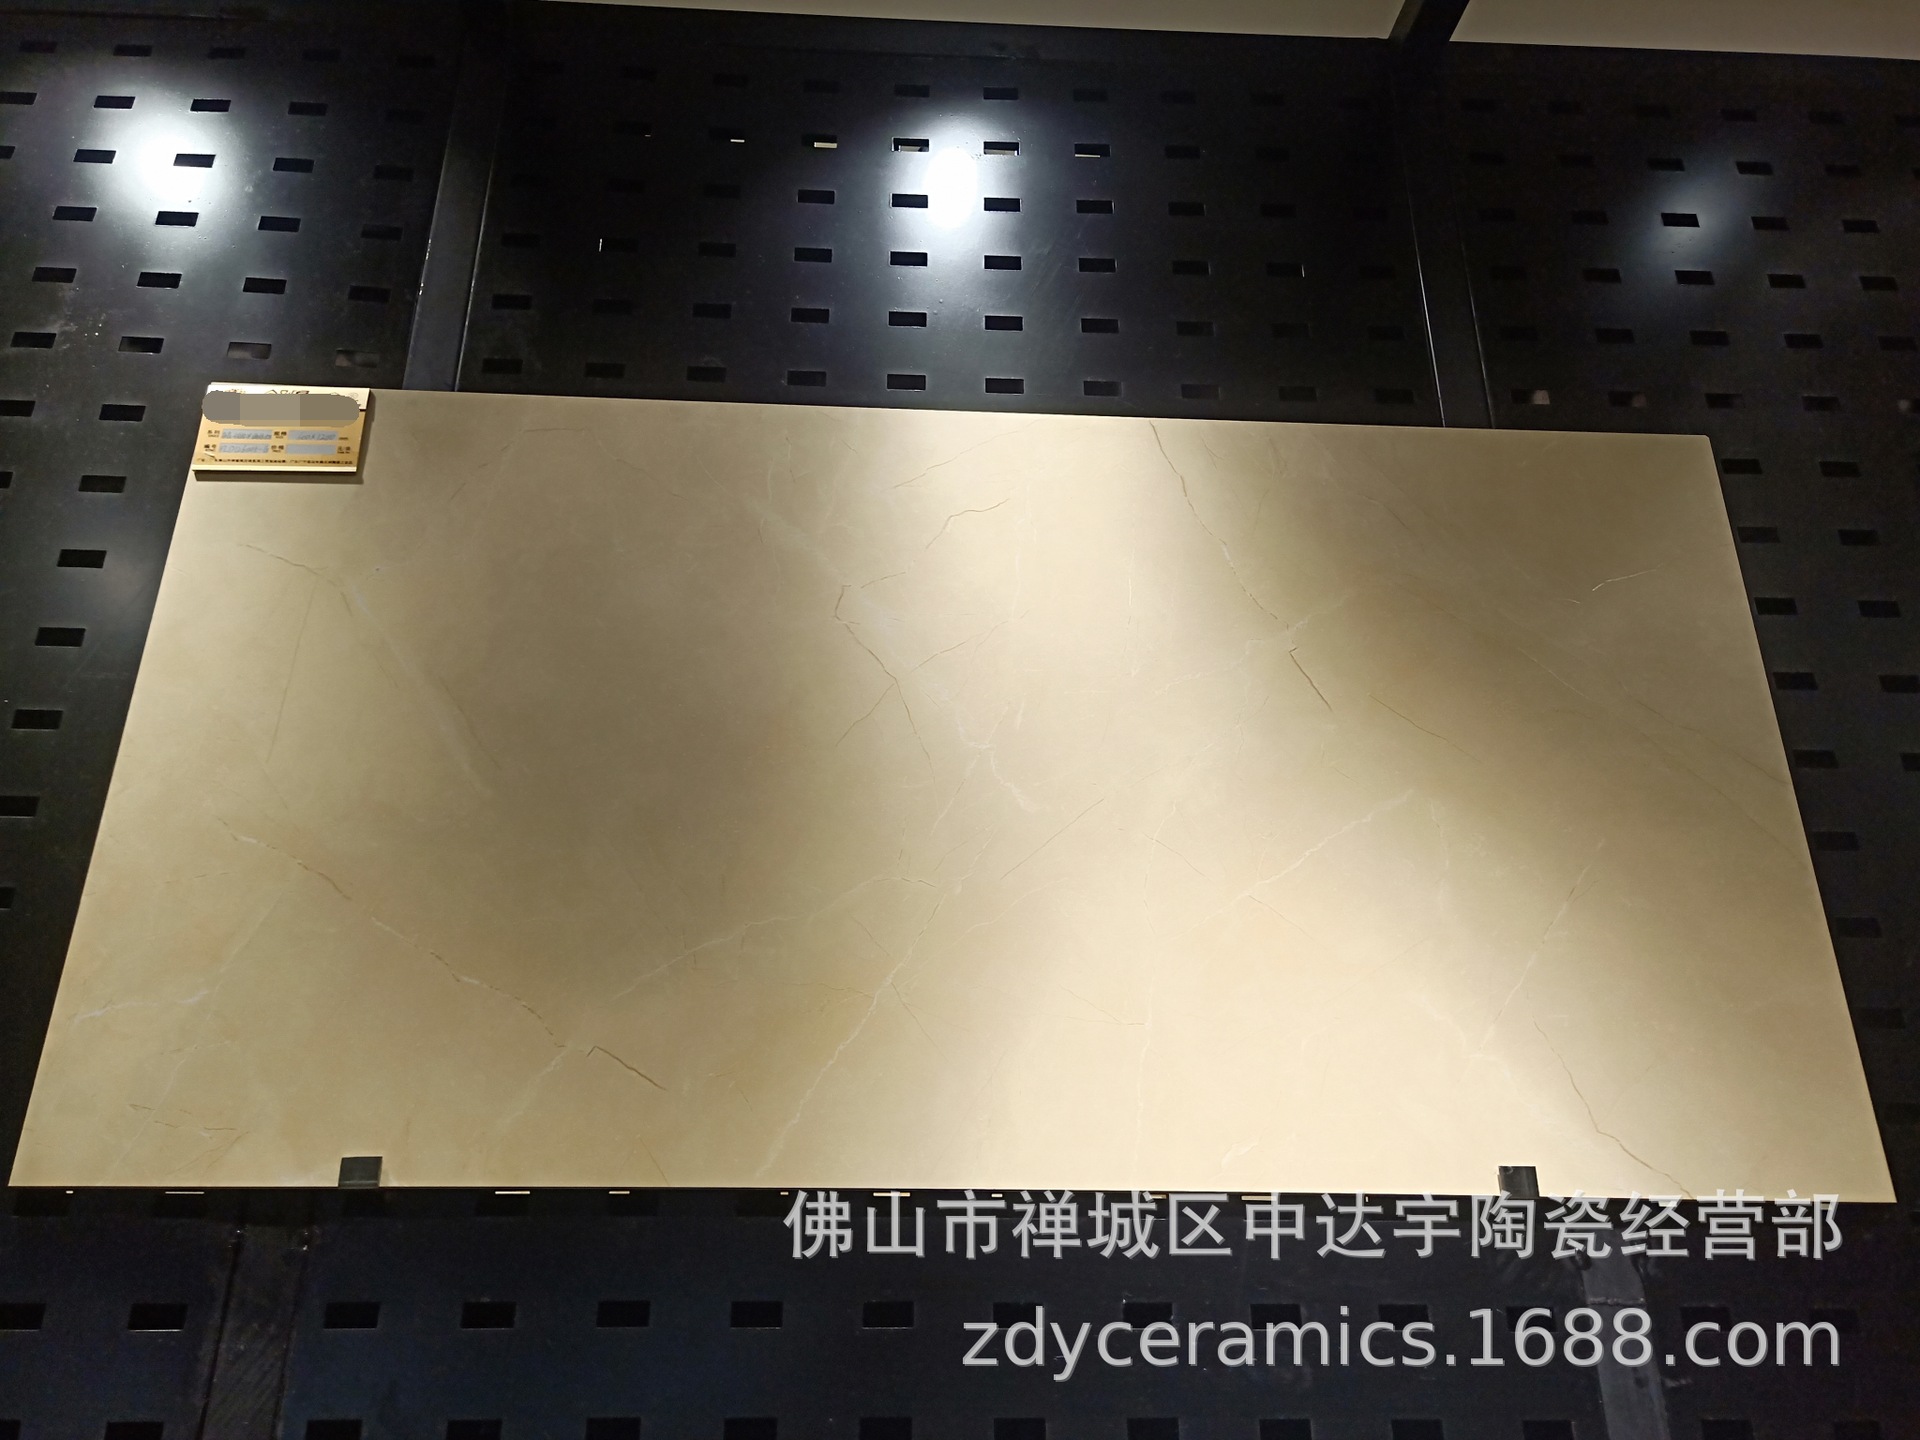 FQfs柔光亮光600x1200mm一石两面负离子通体大理石客厅卫生间瓷砖 安达仕陶瓷示例图37